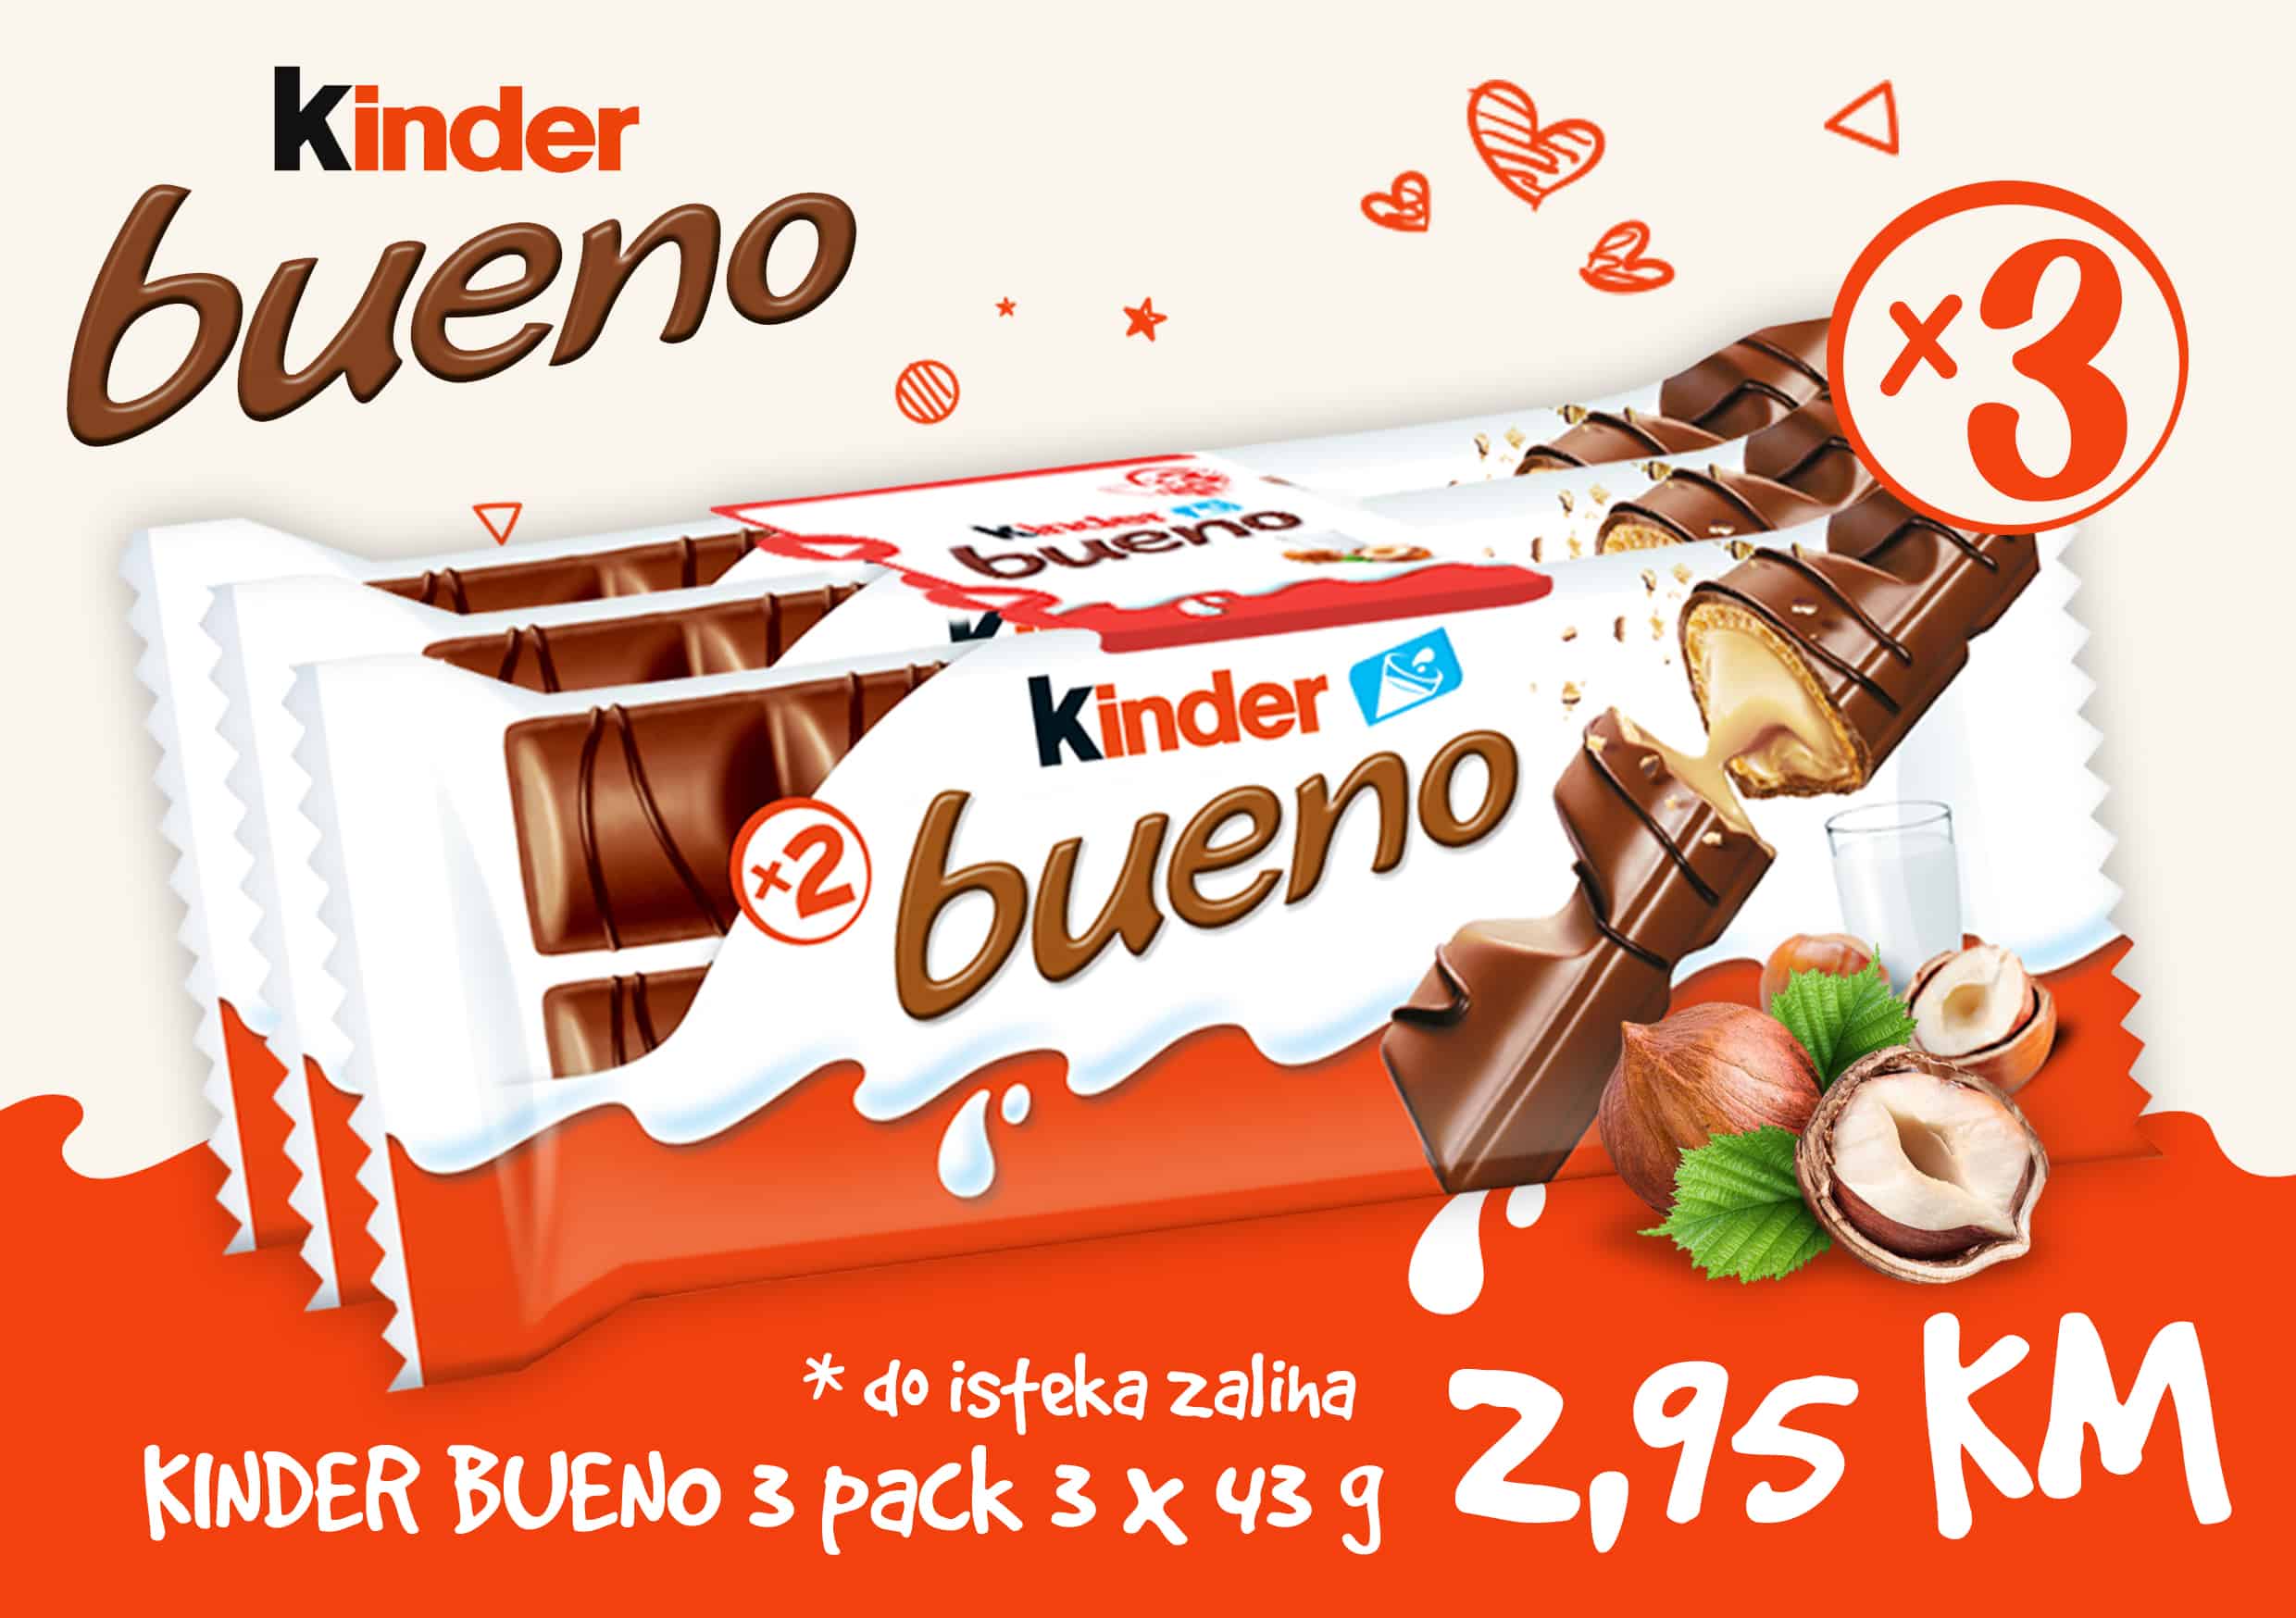 Kinder Bueno je omiljeni čokoladno hrskavi slatkiš svih generacija. Kinder Bueno čokolade na sniženju! Kupite 3 komada po super cijeni od 2,95 KM!